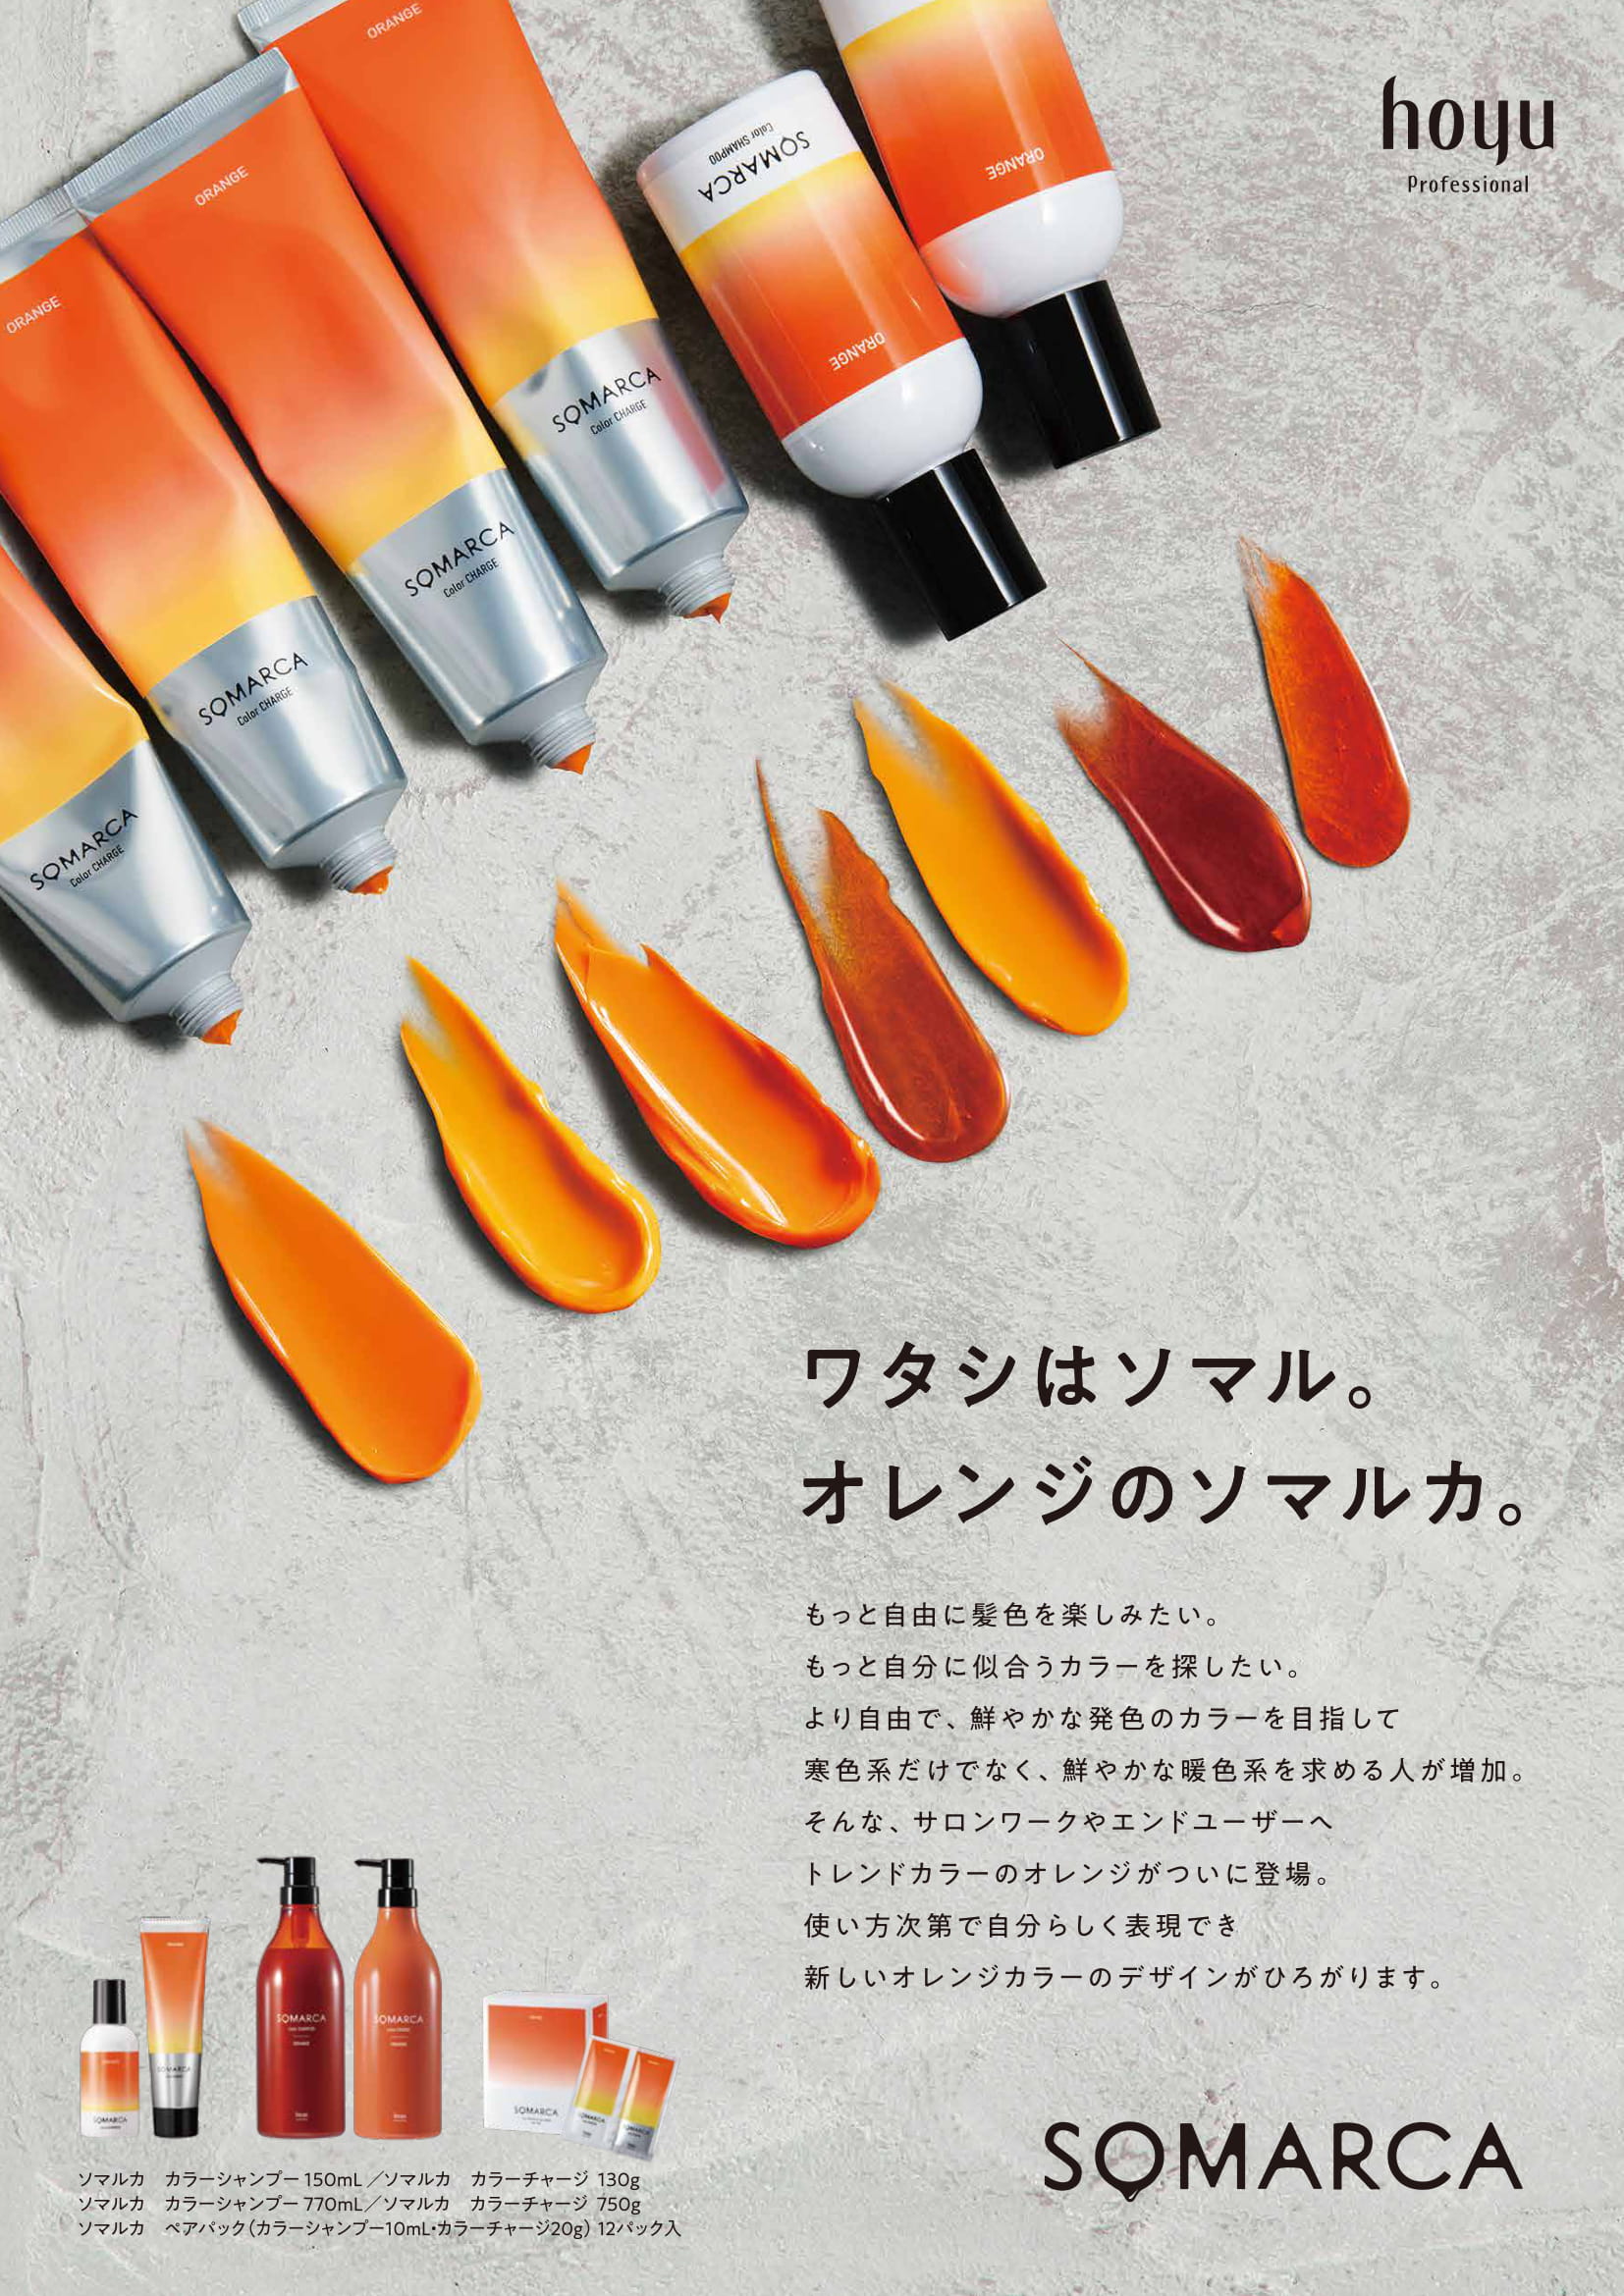 ホーユー SOMARCA(ソマルカ) カラーチャージ オレンジ 750gの業務用通販サイト【b-zone】(REVO+)